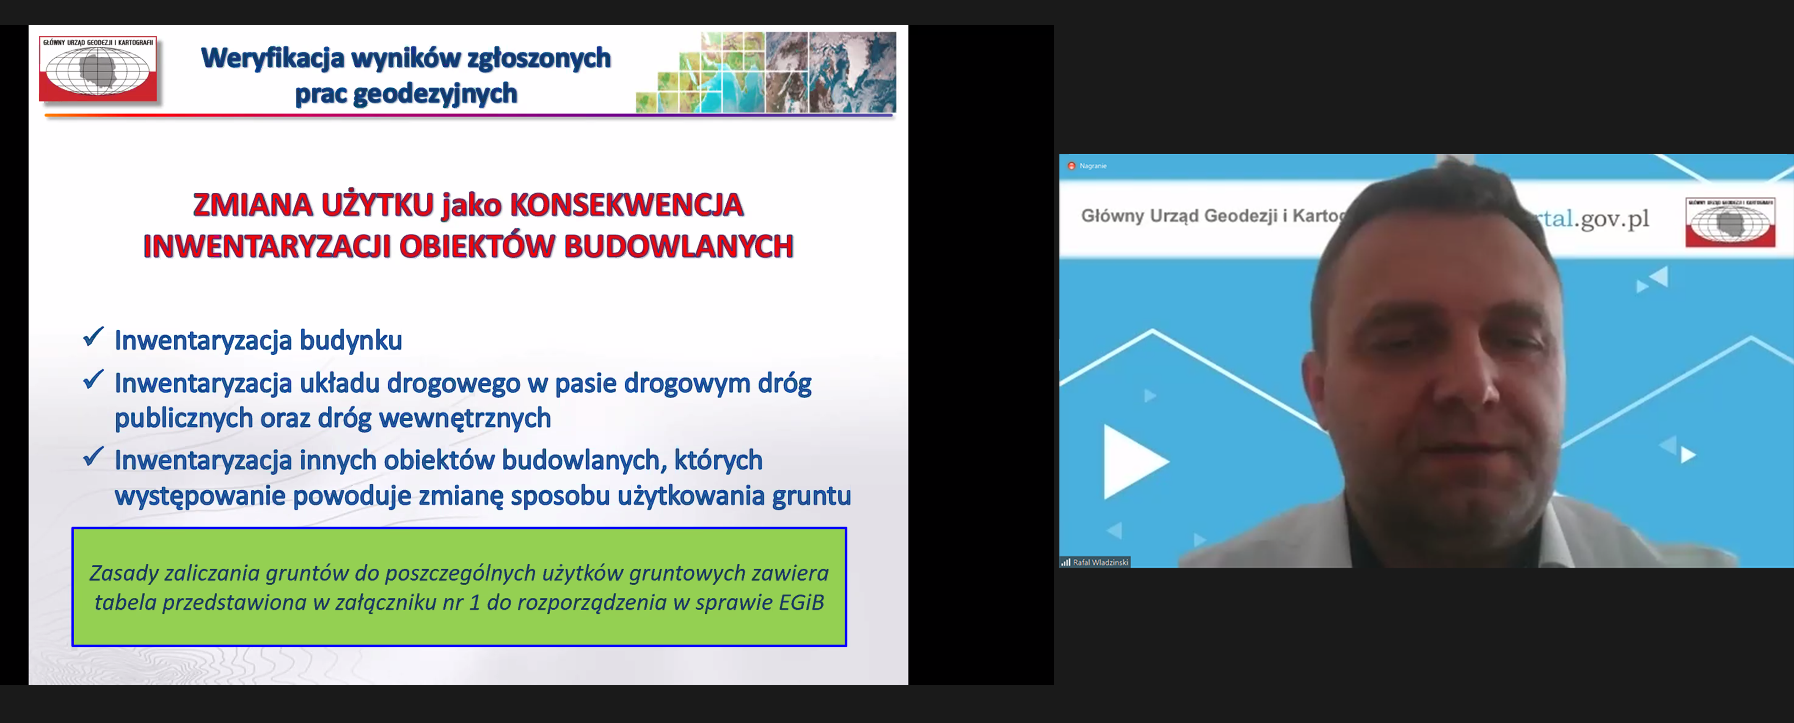 Zrzut ekranu z programu ZOOM. Po lewej fragment prezentacji podczas wideokonferencji "Szkolenie dla weryfikatorów", a po prawej Dyrektor Departamentu Informacji o Nieruchomościach Rafał Władziński podczas prezentacji.